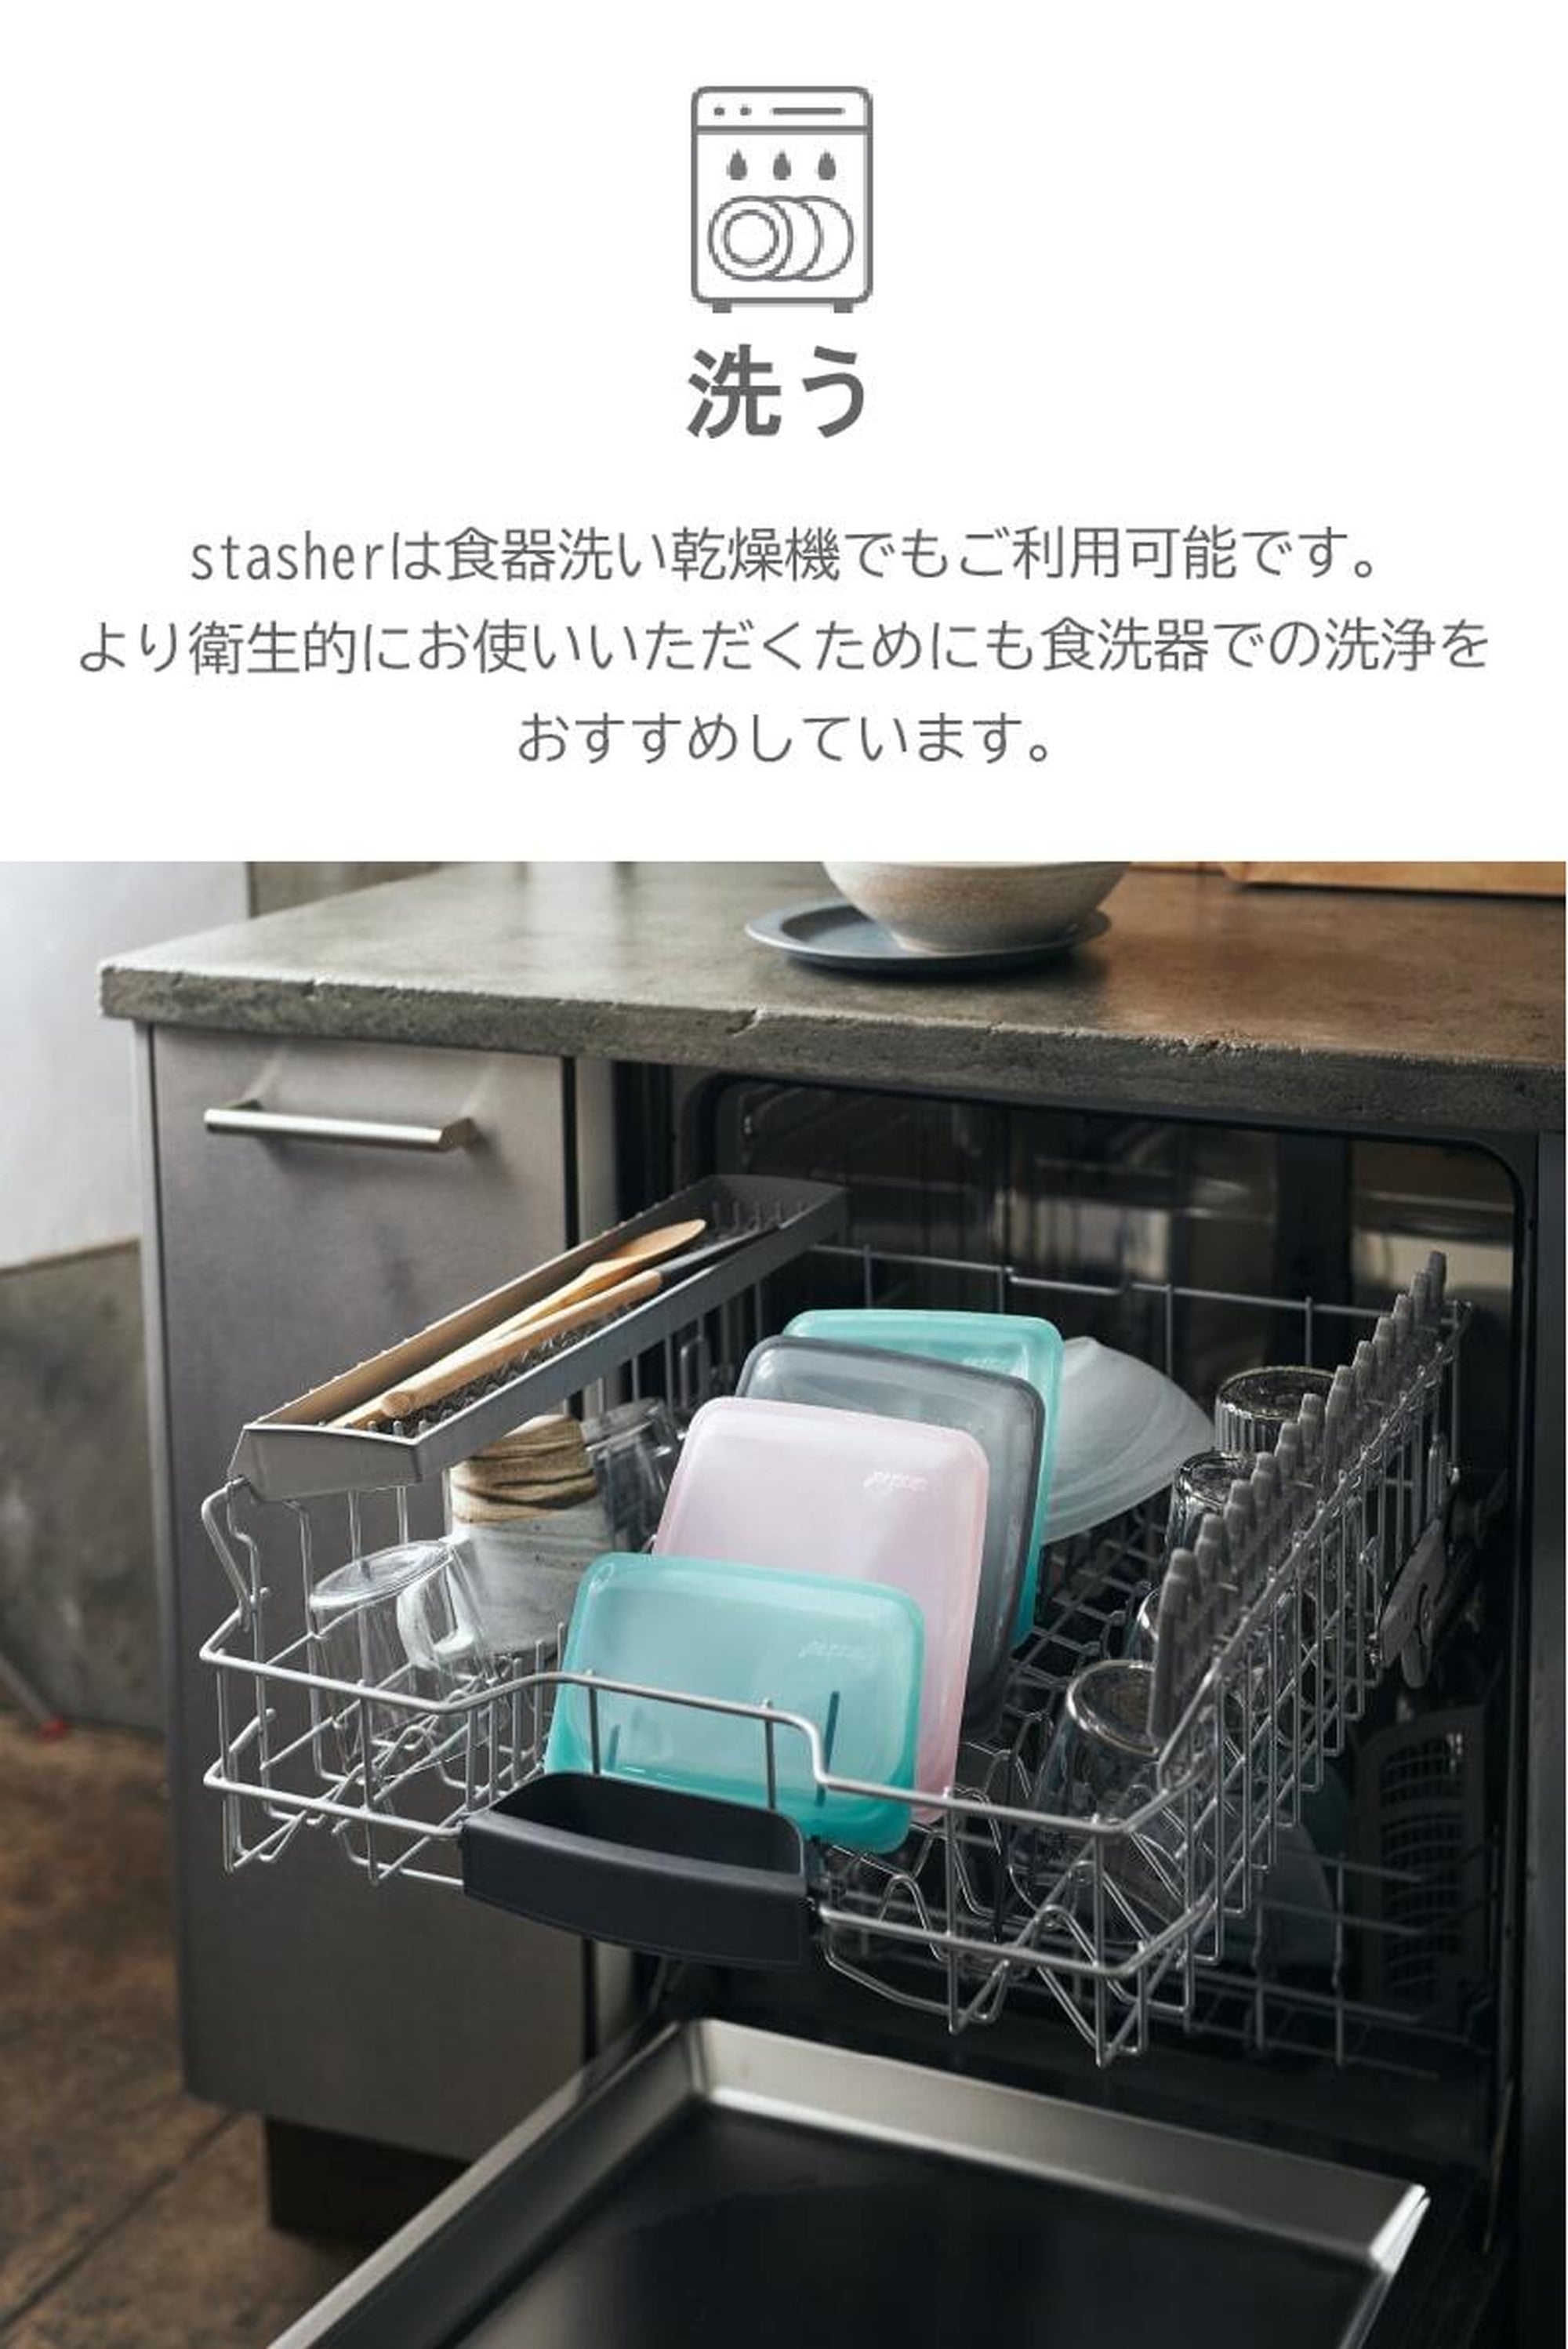 スタッシャー シリコンバッグ ezシリーズ 新モデル stasher 日本正規品 EZクォート 2色